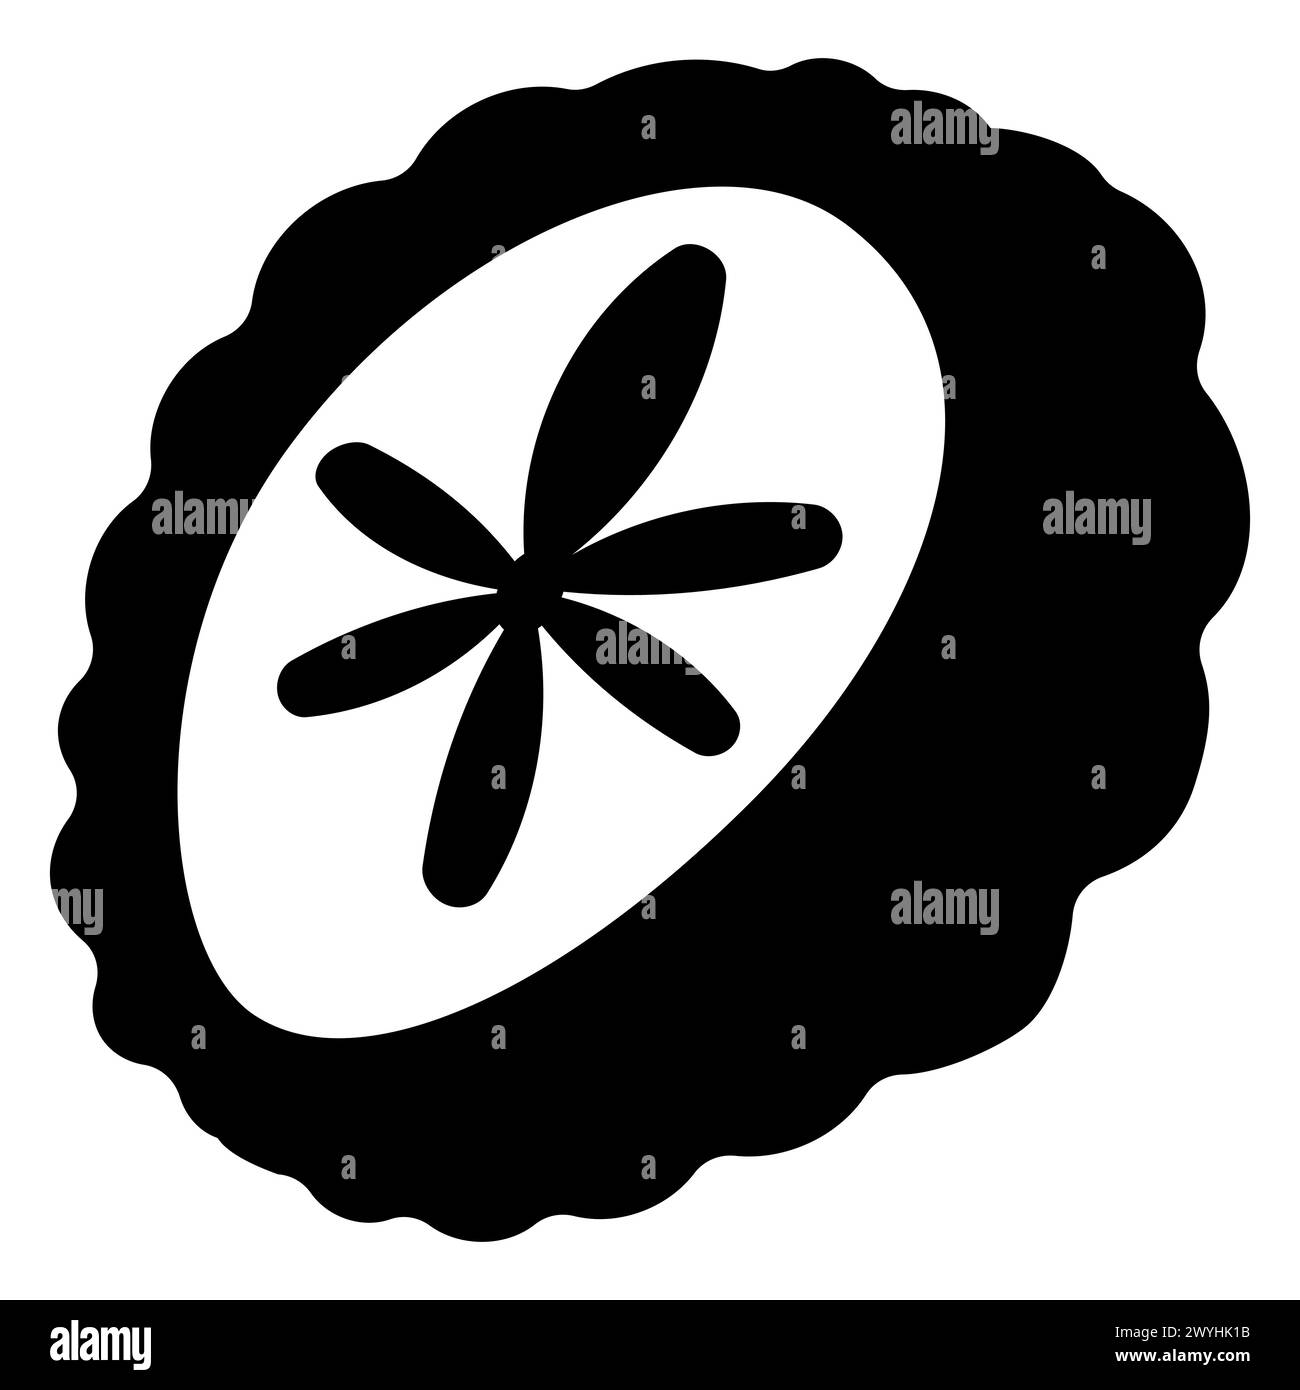 Icona cinese della Mooncake. silhouette bianca e nera. Una pasticceria asiatica tradizionalmente consumata durante il Festival di metà autunno insieme al tè cinese. dood. linea Illustrazione Vettoriale